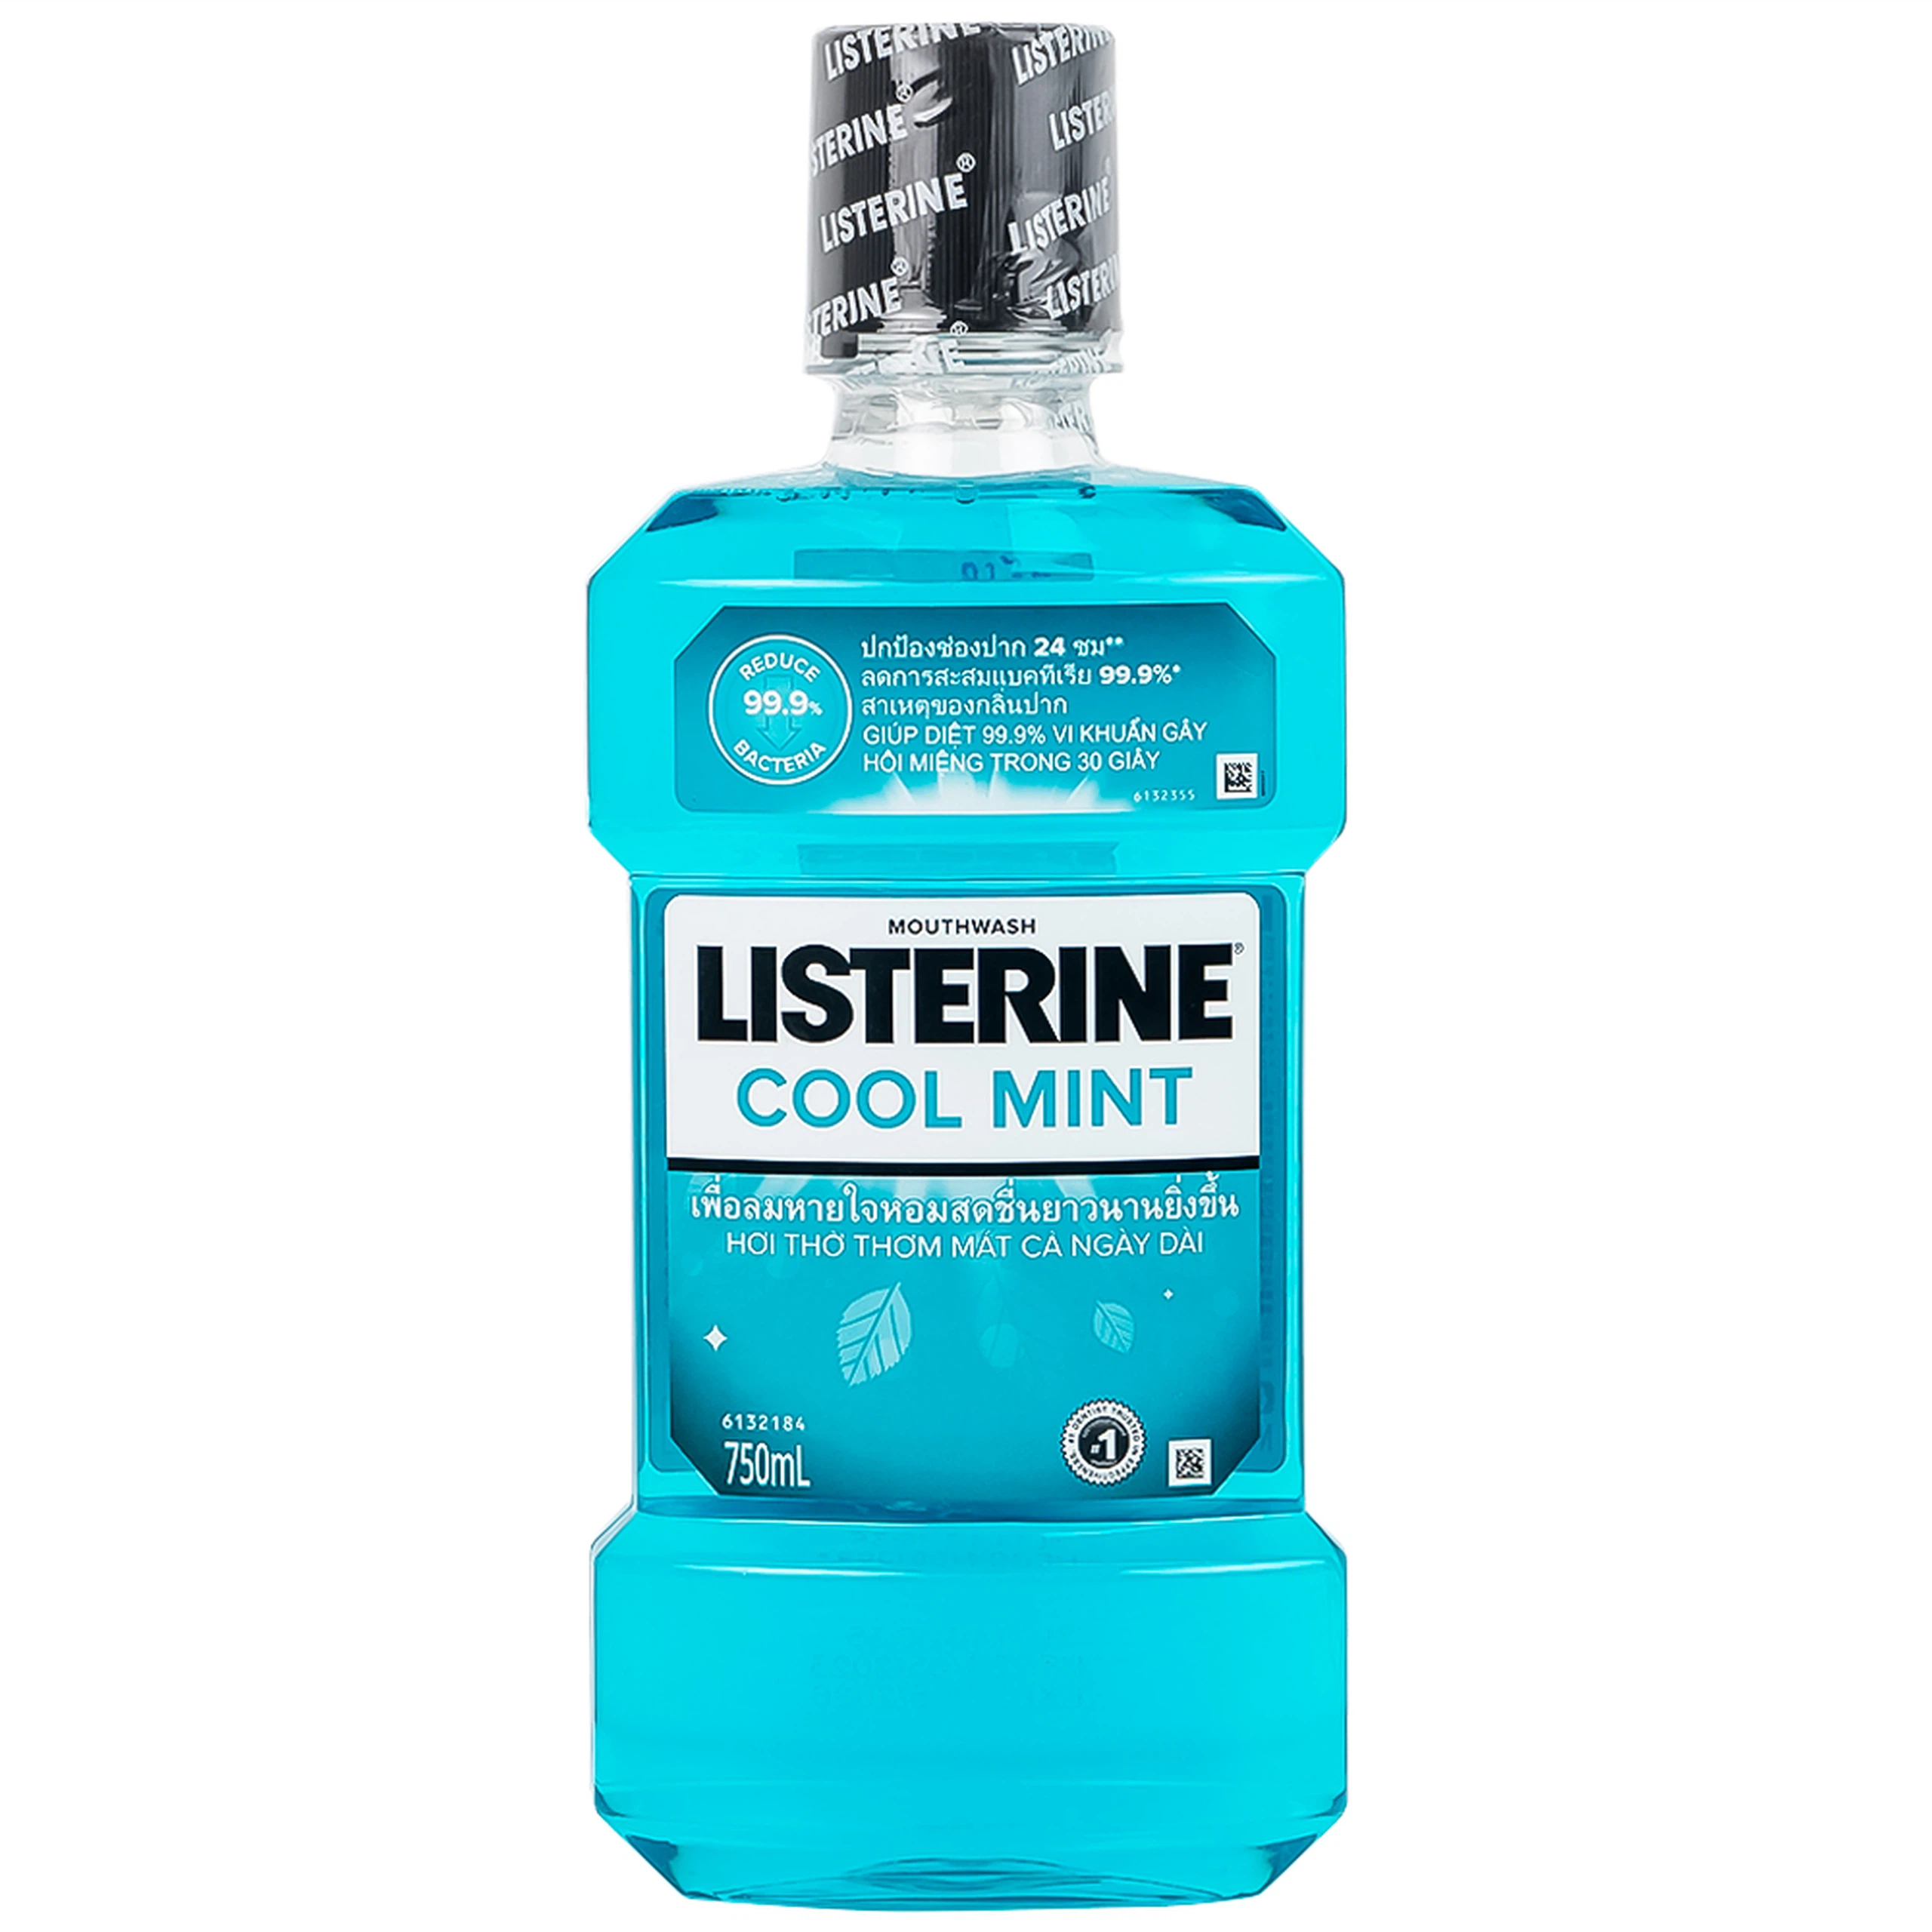 Nước súc miệng Listerine Cool Mint bảo vệ khoang miệng suốt 24h khỏi vi khuẩn hôi miệng, mảng bám, viêm nướu (750ml)